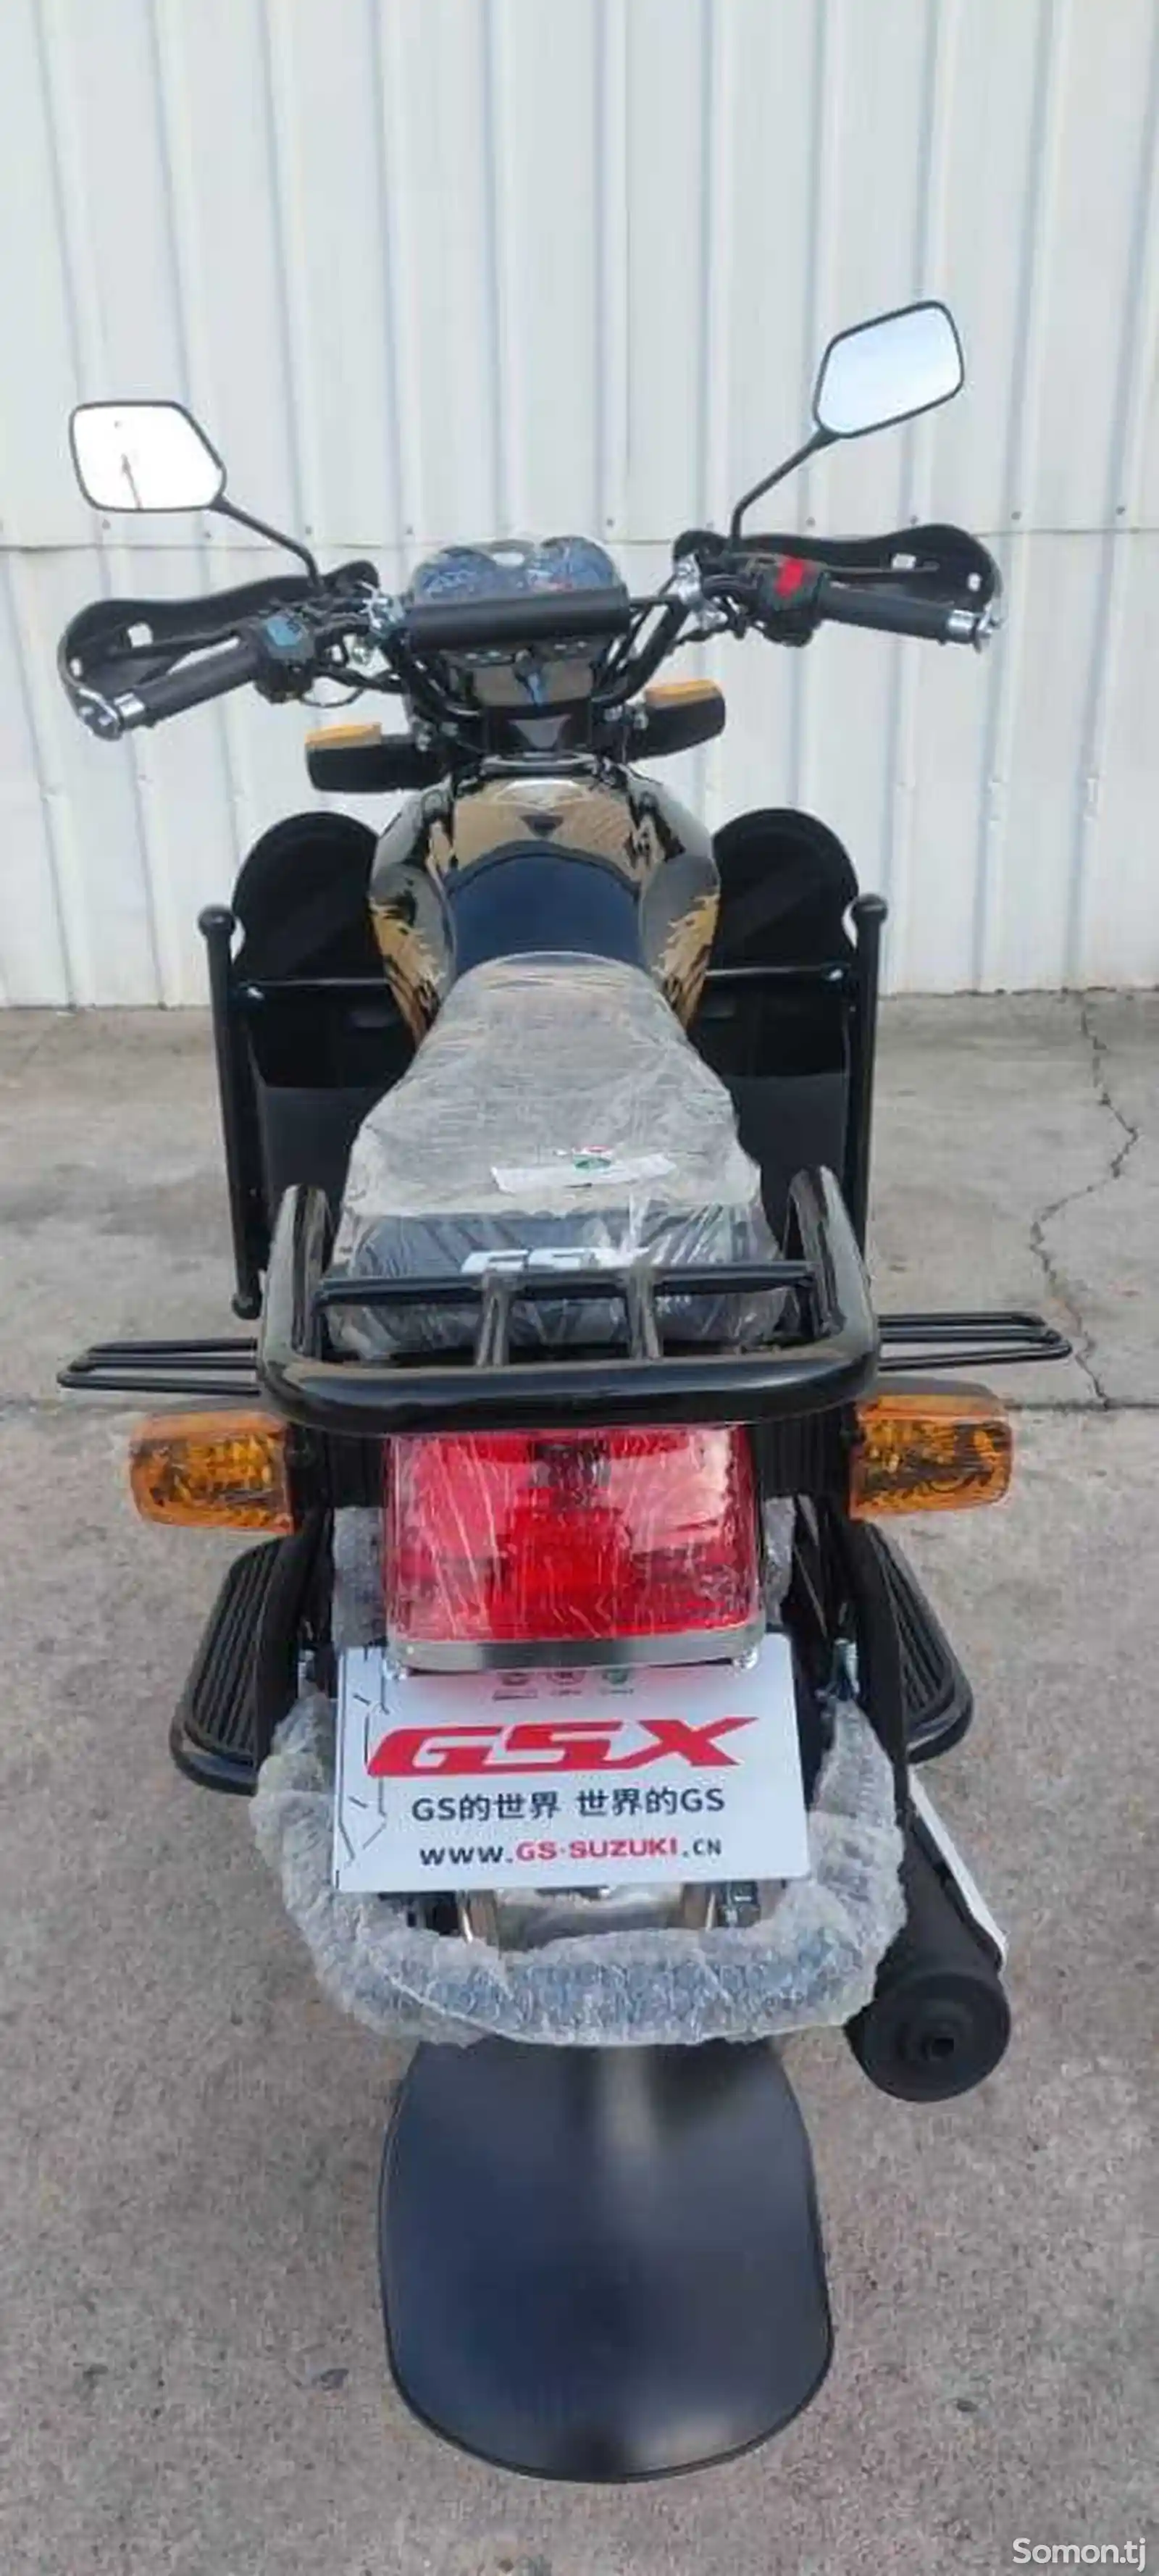 Мотоцикл gsx-6